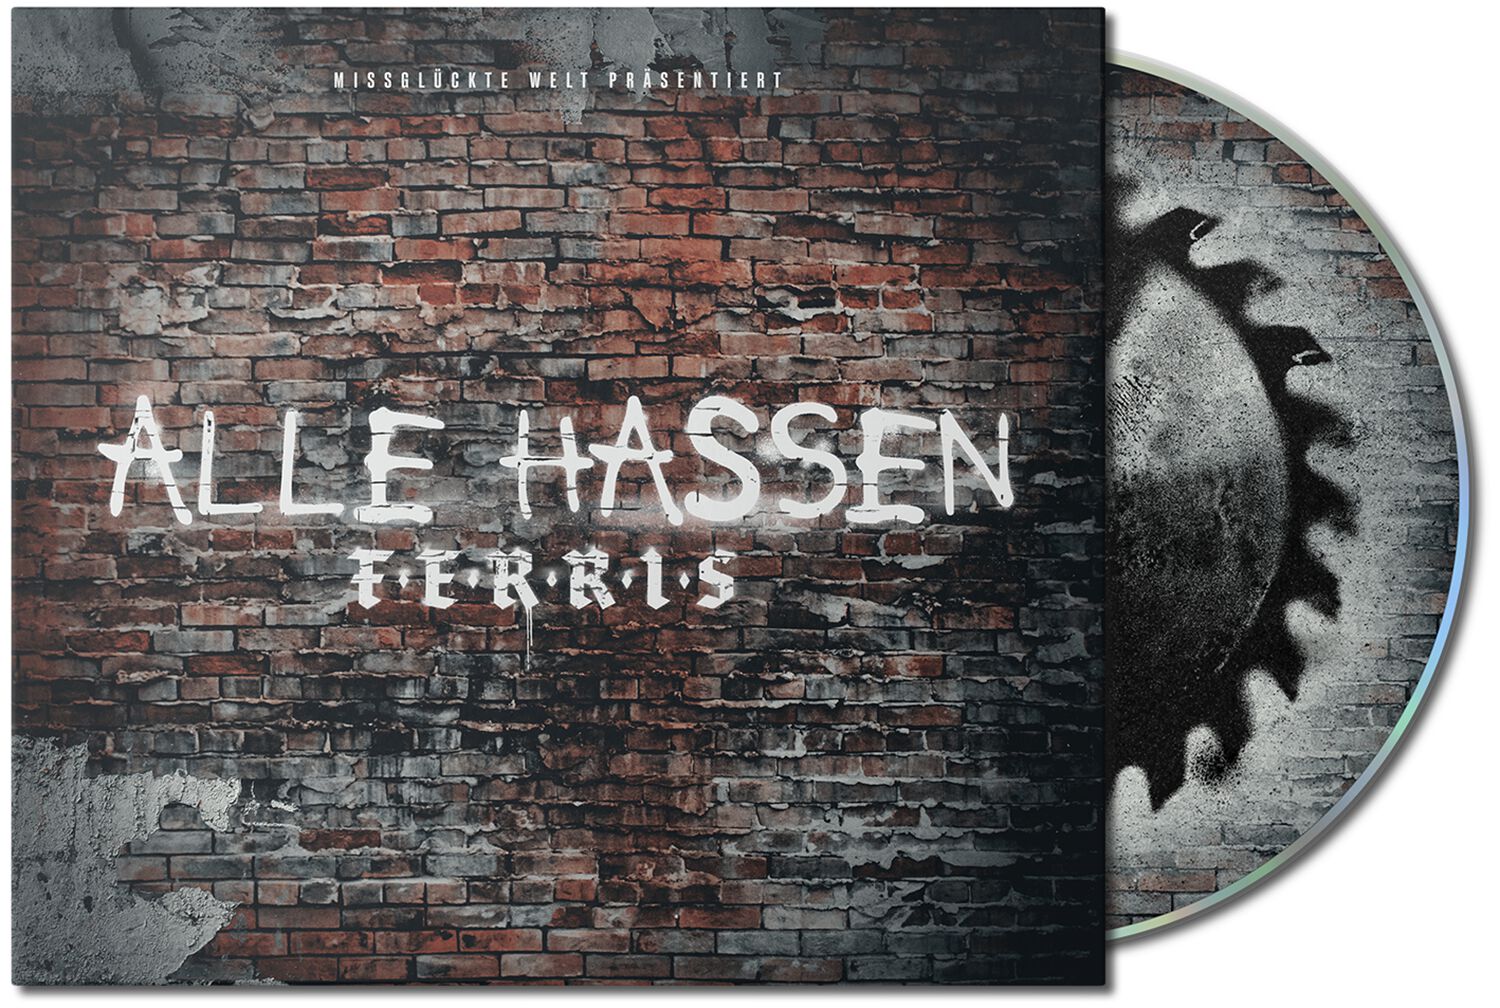 Image of Ferris MC / Shocky / Swiss Alle hassen Ferris CD Standard